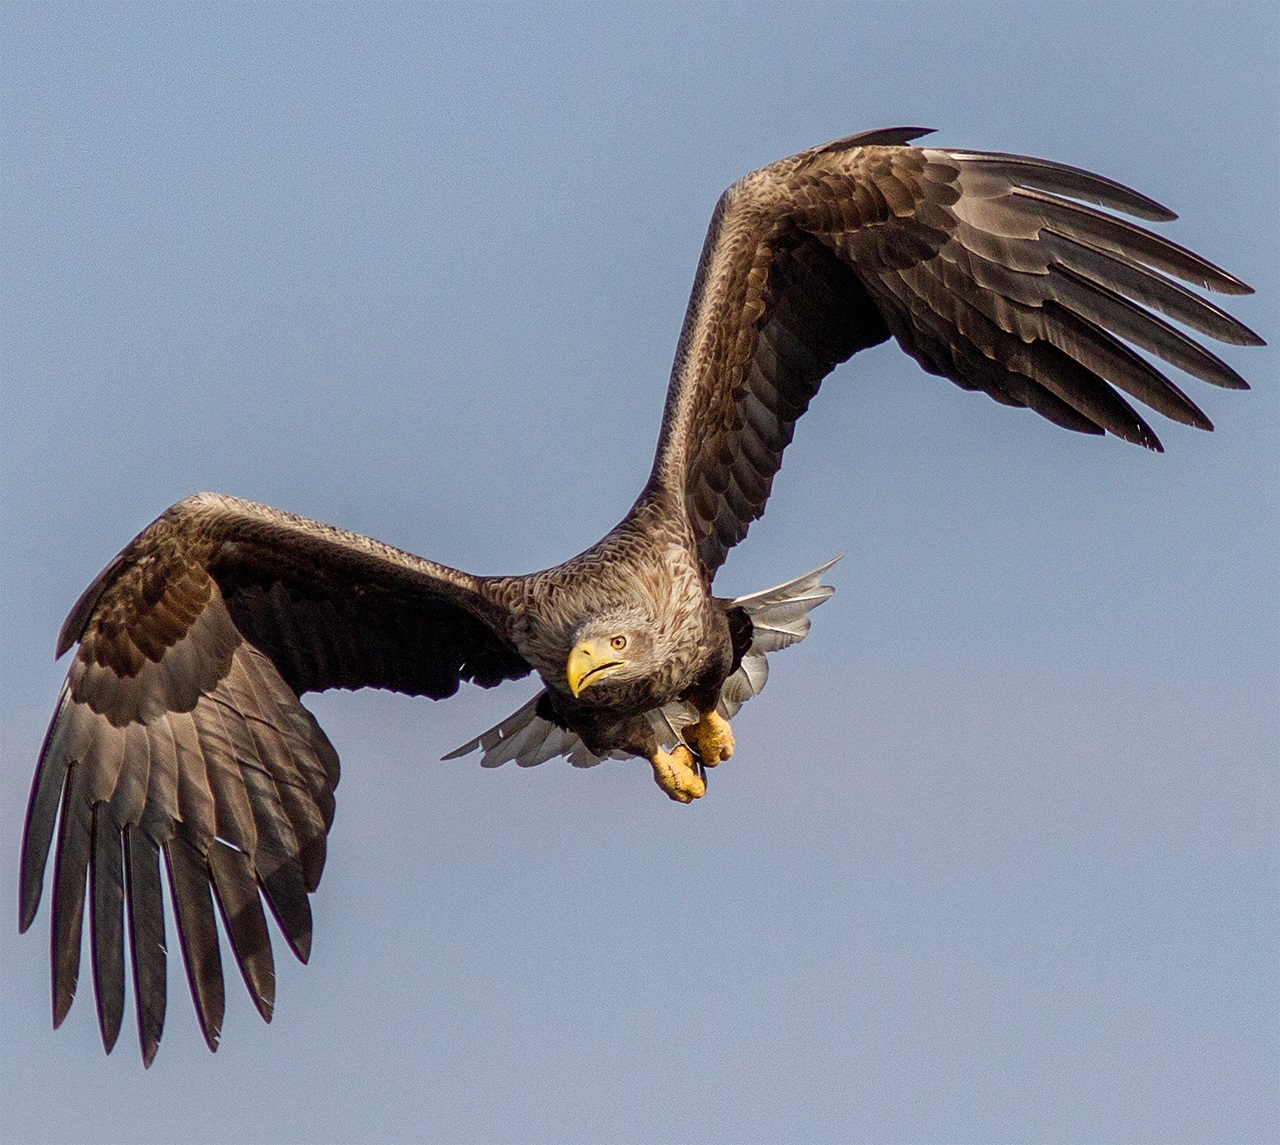 Wyt-tailed eagle